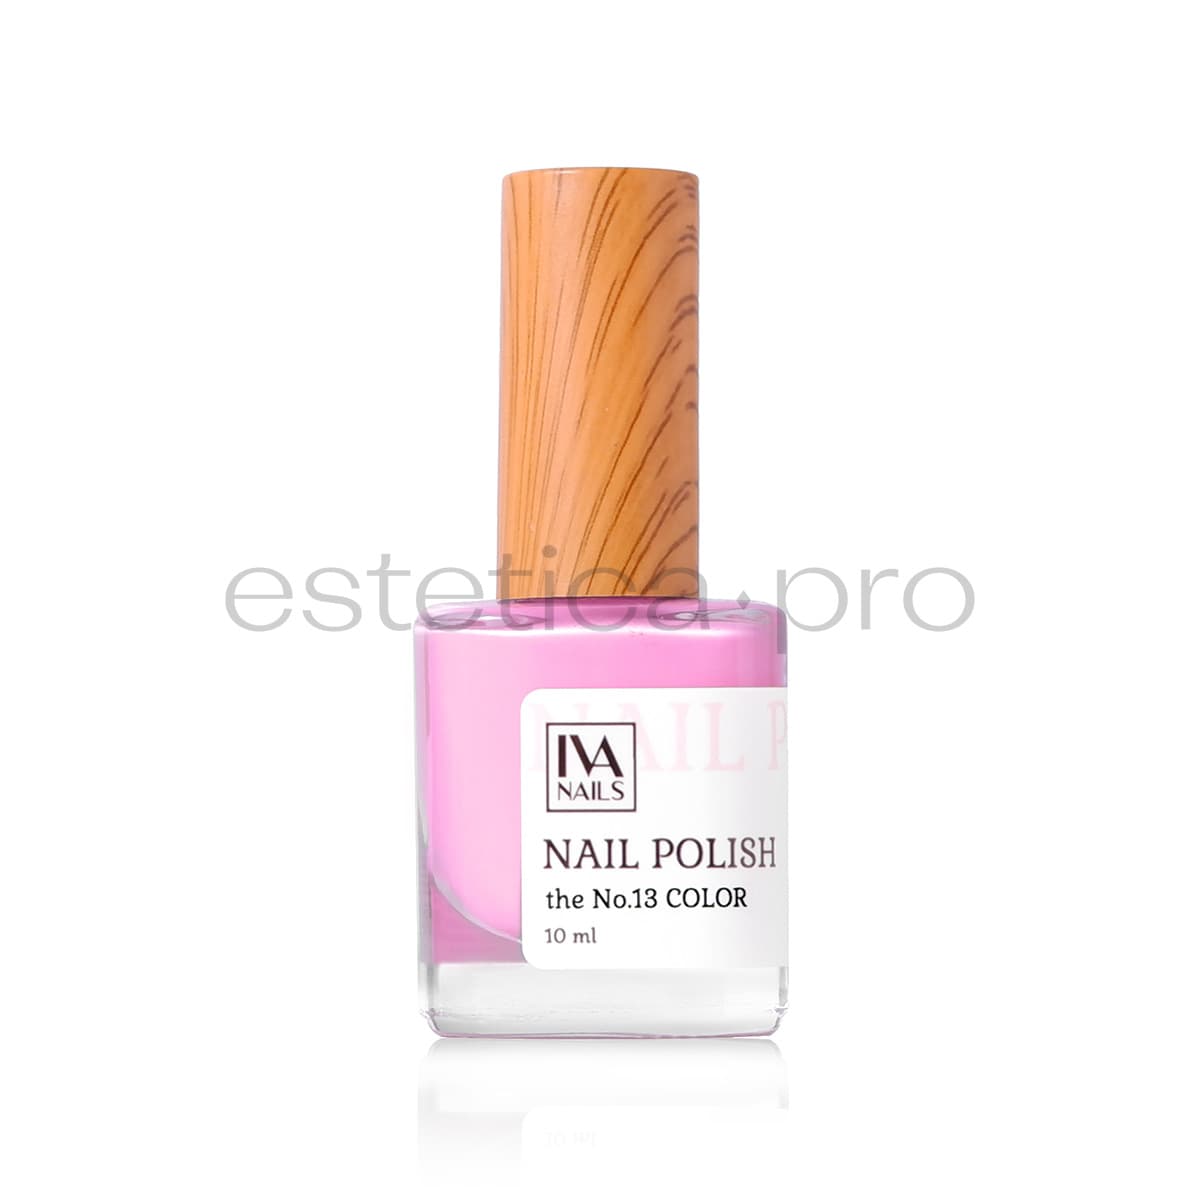 Лак для ногтей Iva Nails 13, 10мл.